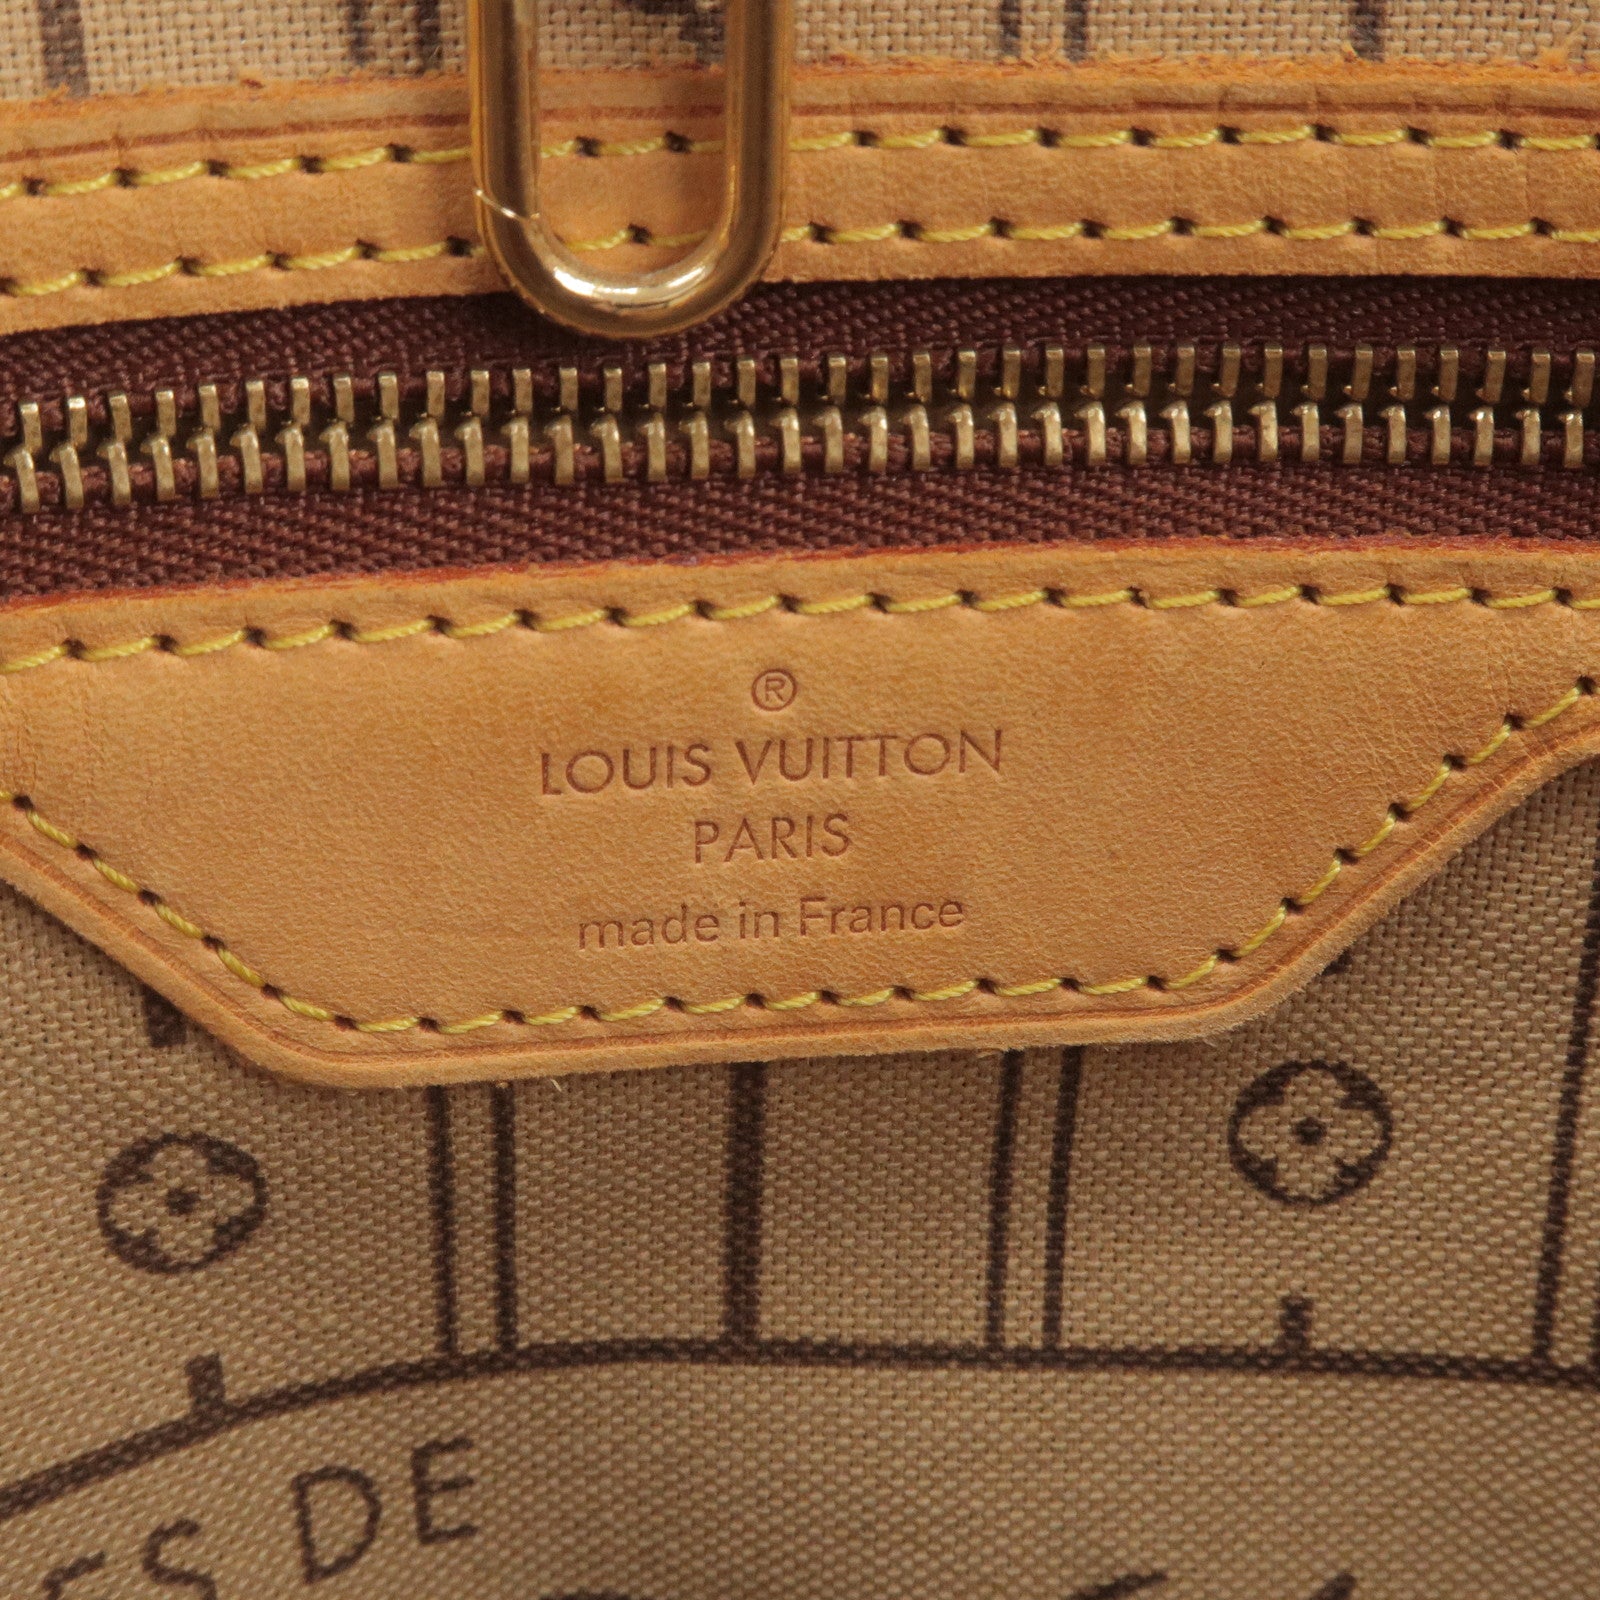 Louis Vuitton Since 1854 Blue Collection Launch